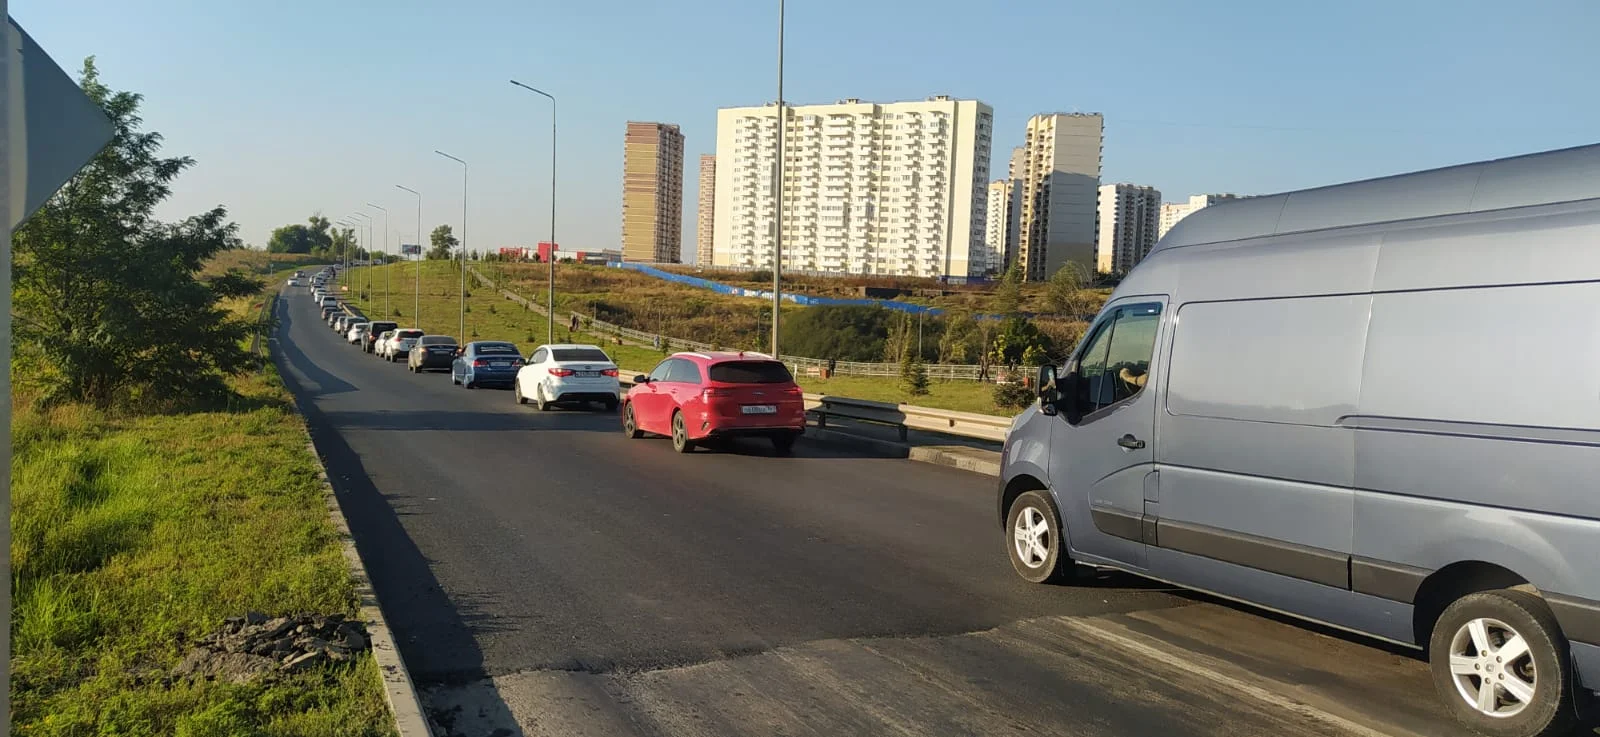 Обновленное дорожное покрытие появится в Суворовском и Платовском районах донской столицы